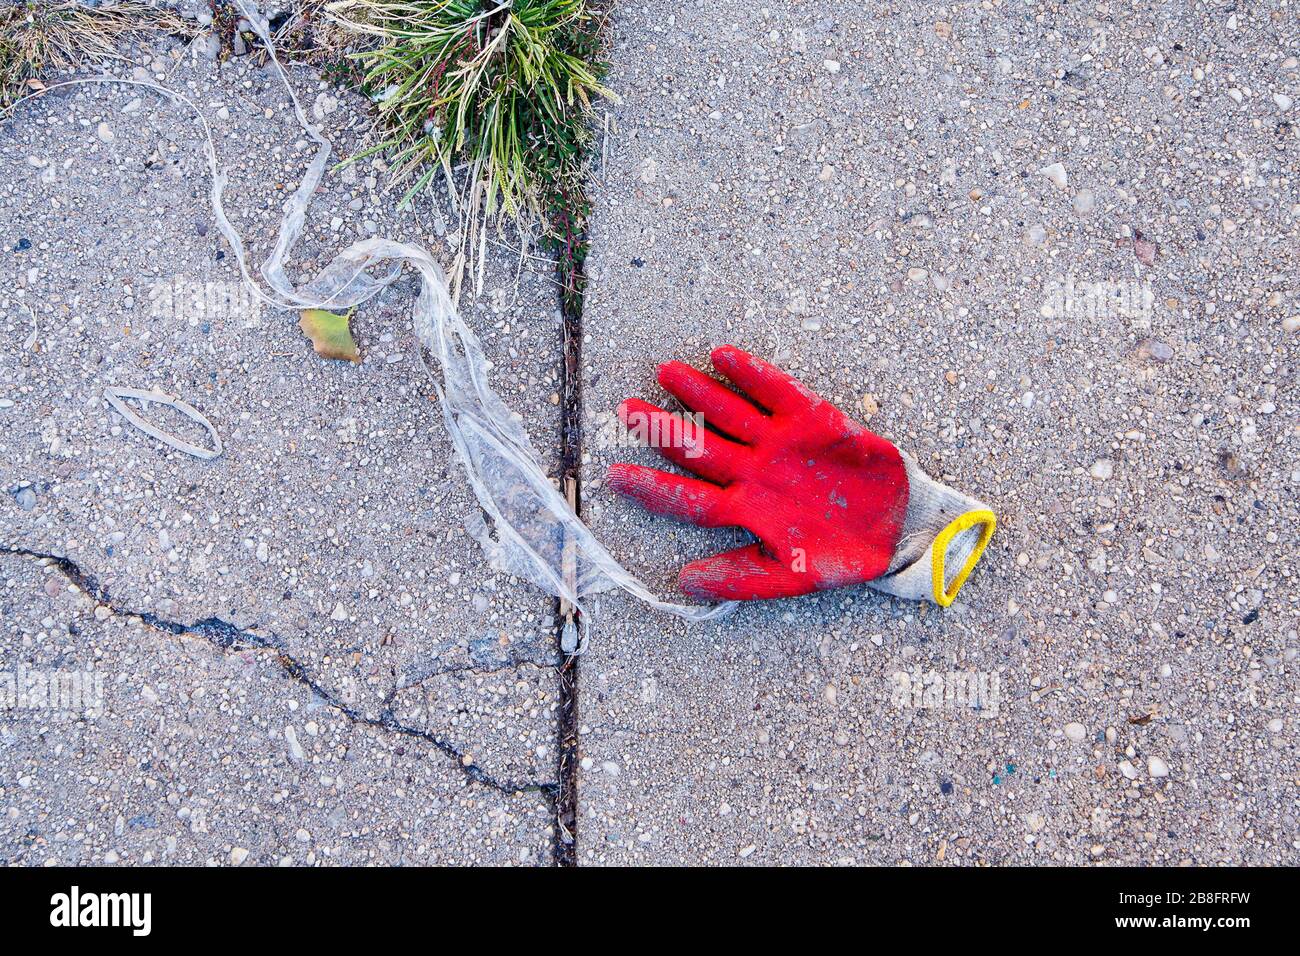 Gant de travail rouge solitaire sur le trottoir avec débris et mauvaises herbes Banque D'Images